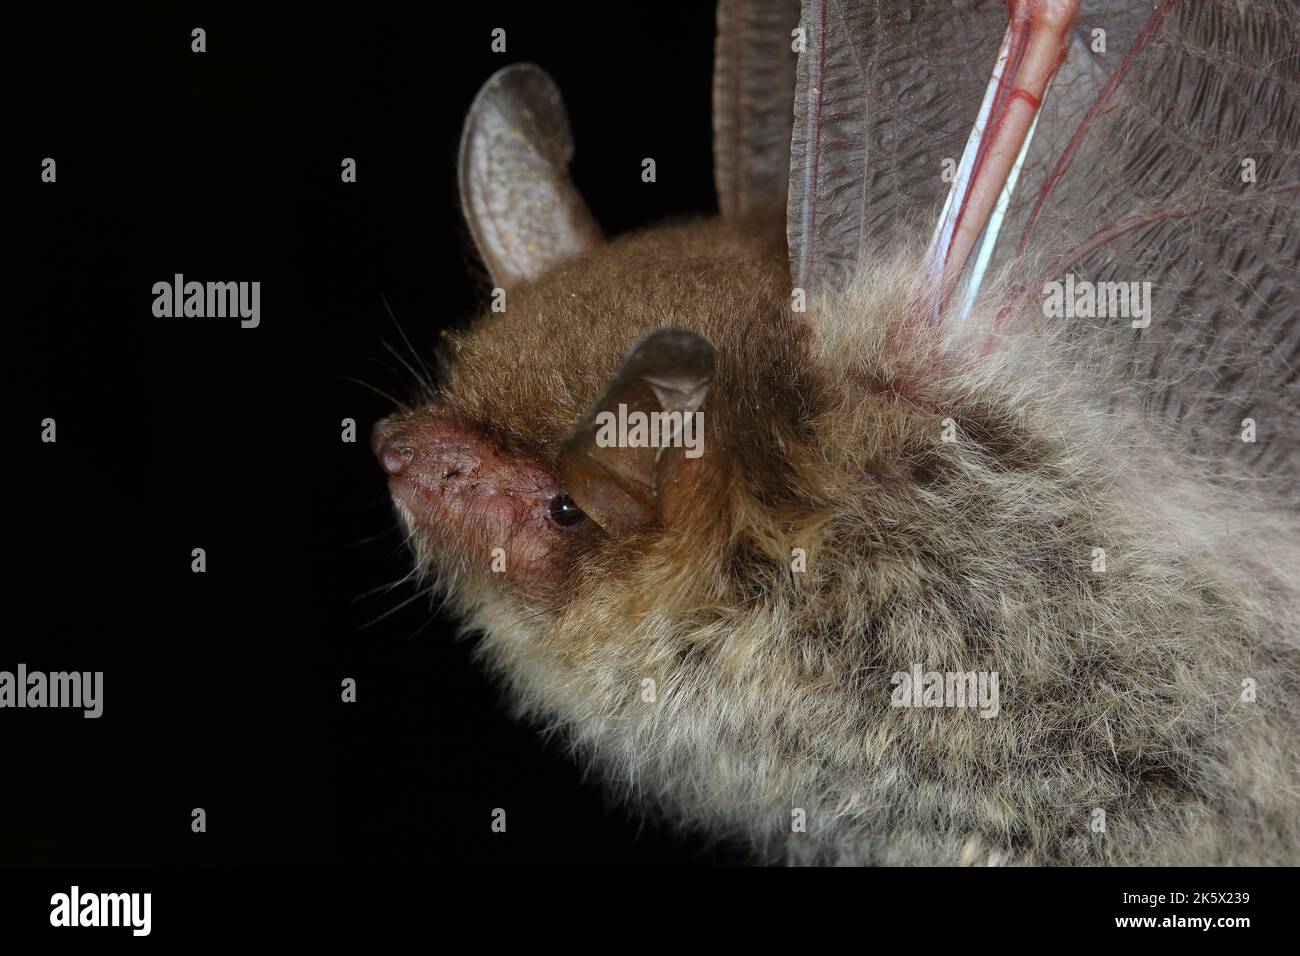 Portrait of Natterer's bat (Myotis nattereri) in a natural habitat Stock Photo